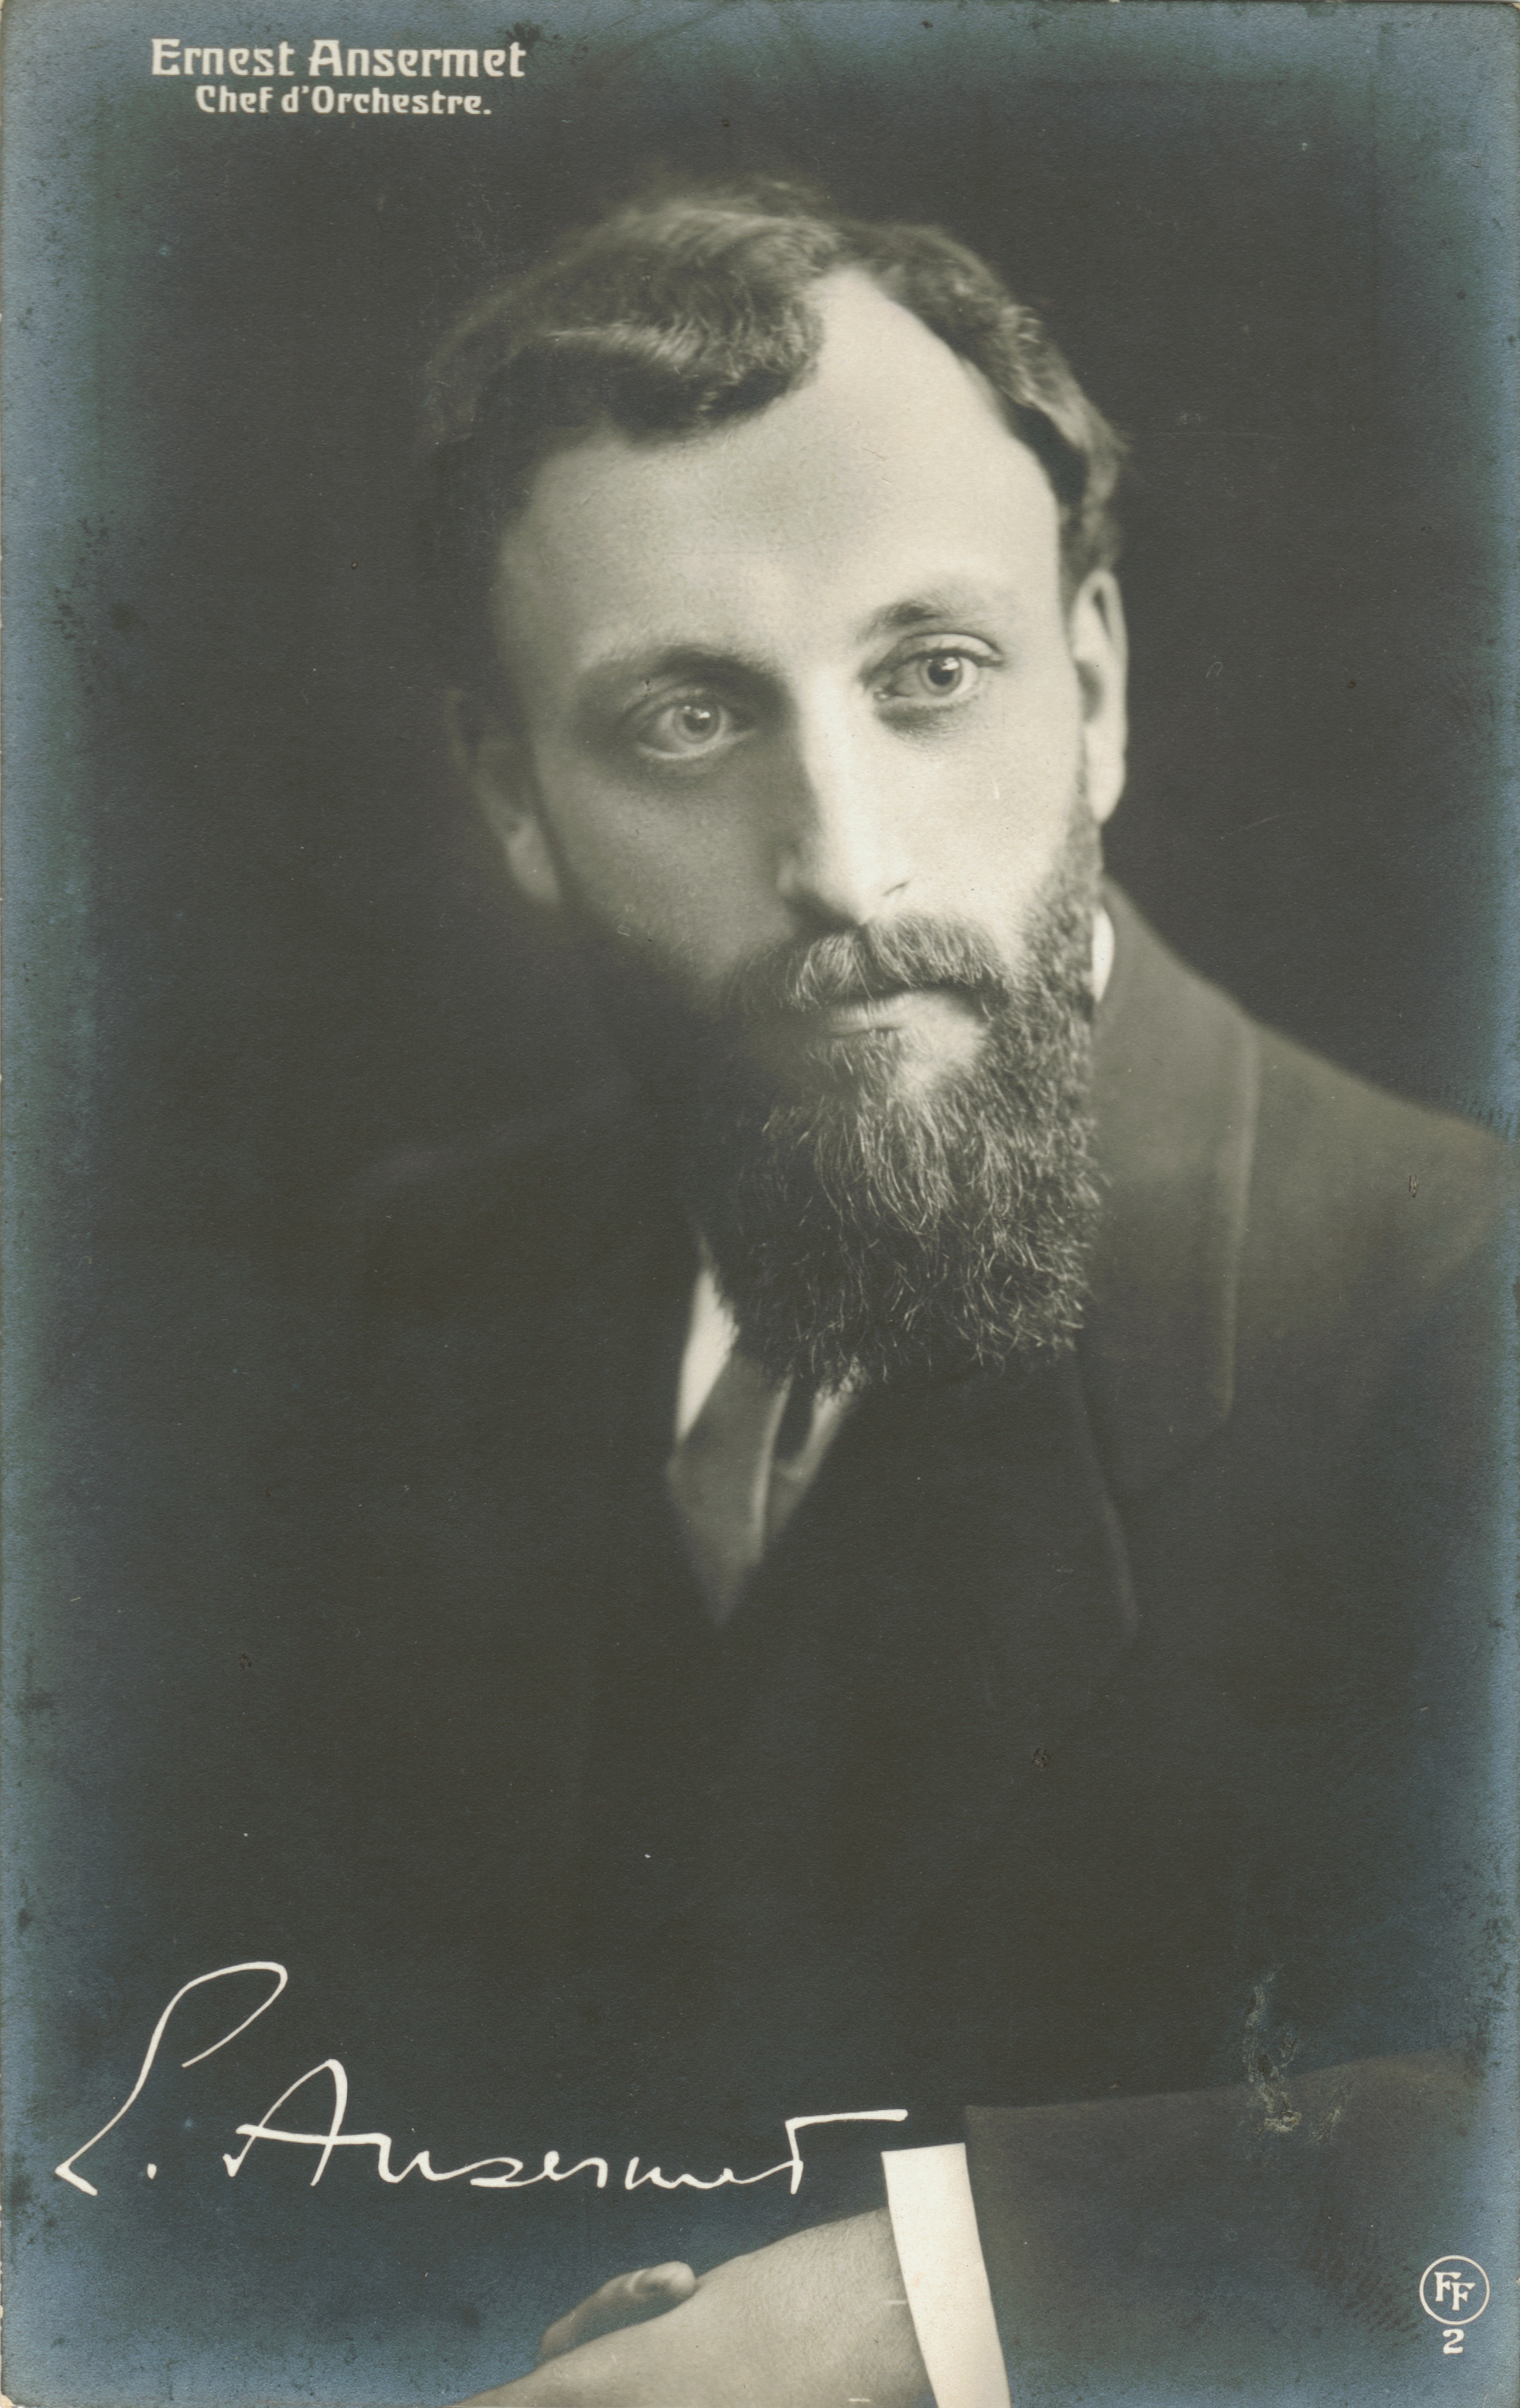 Ernest ANSERMET, Carte postale Silverprint, 13,7 x 8,5 cm, Ed.: Foetisch Frères, Lausanne (FF 2) avec le portrait du jeune Ernest ANSERMET, probablement 1909, cliquer pour une vue agrandie